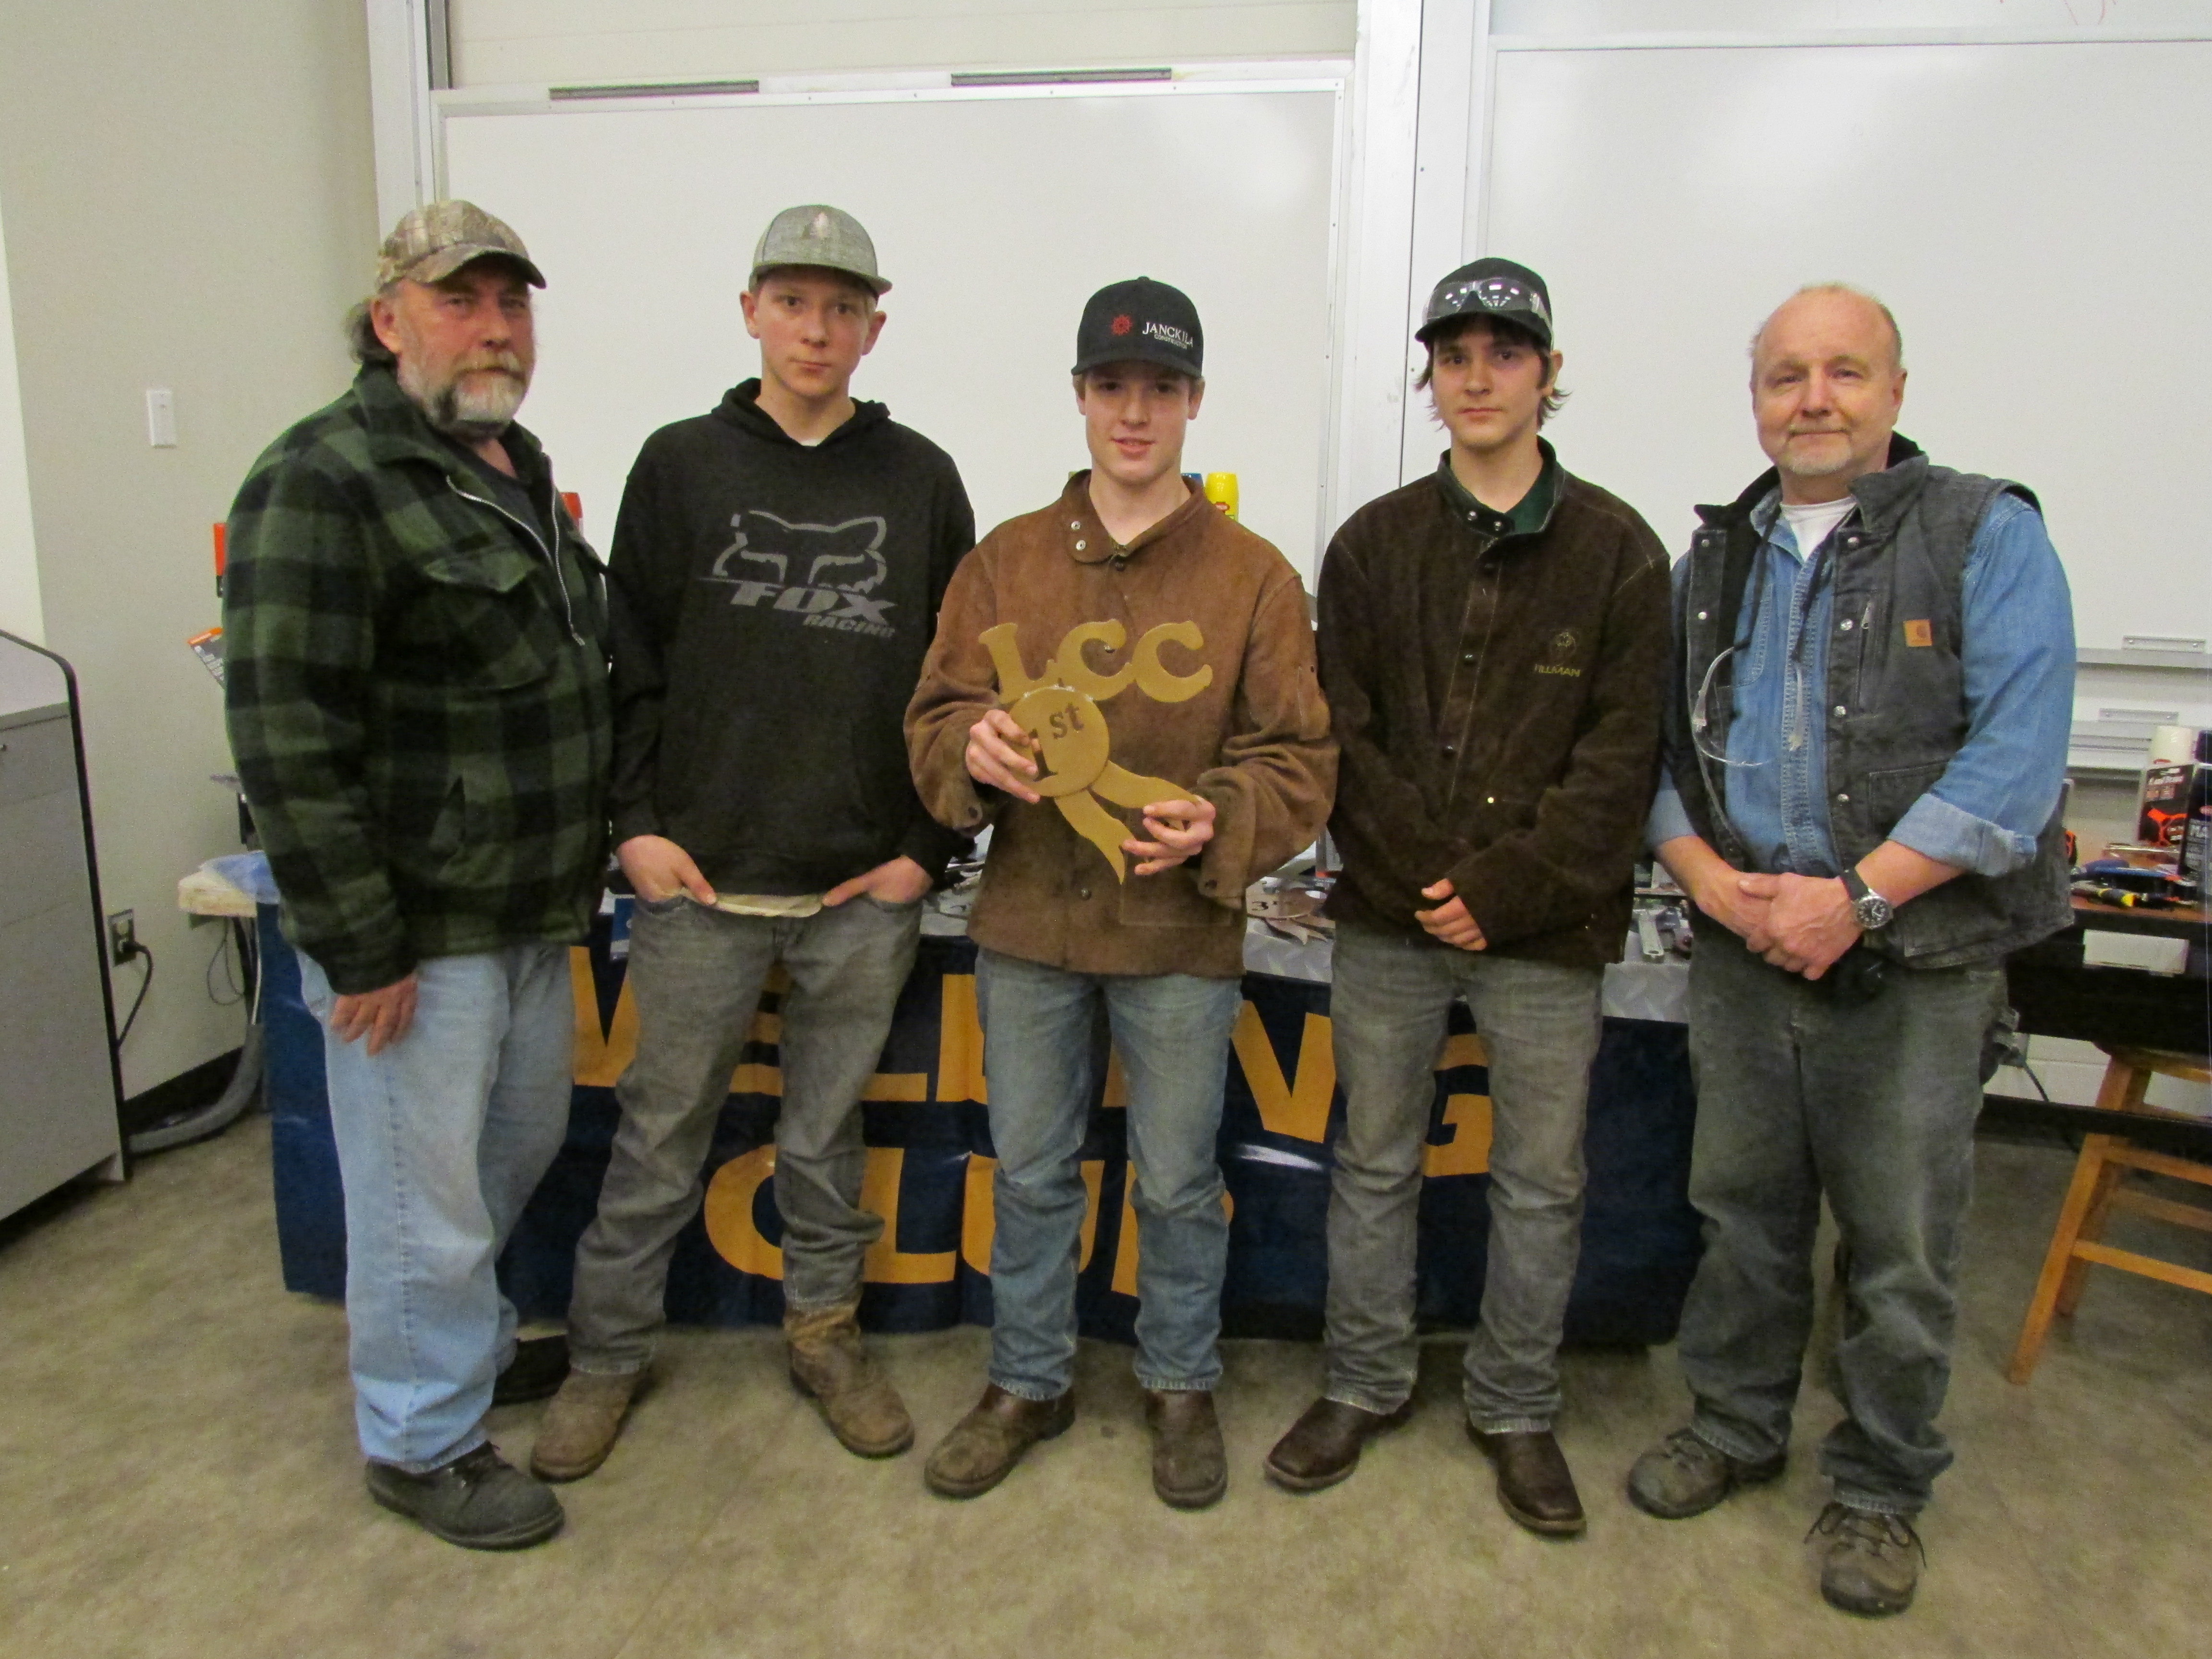 Welding Winners Photo